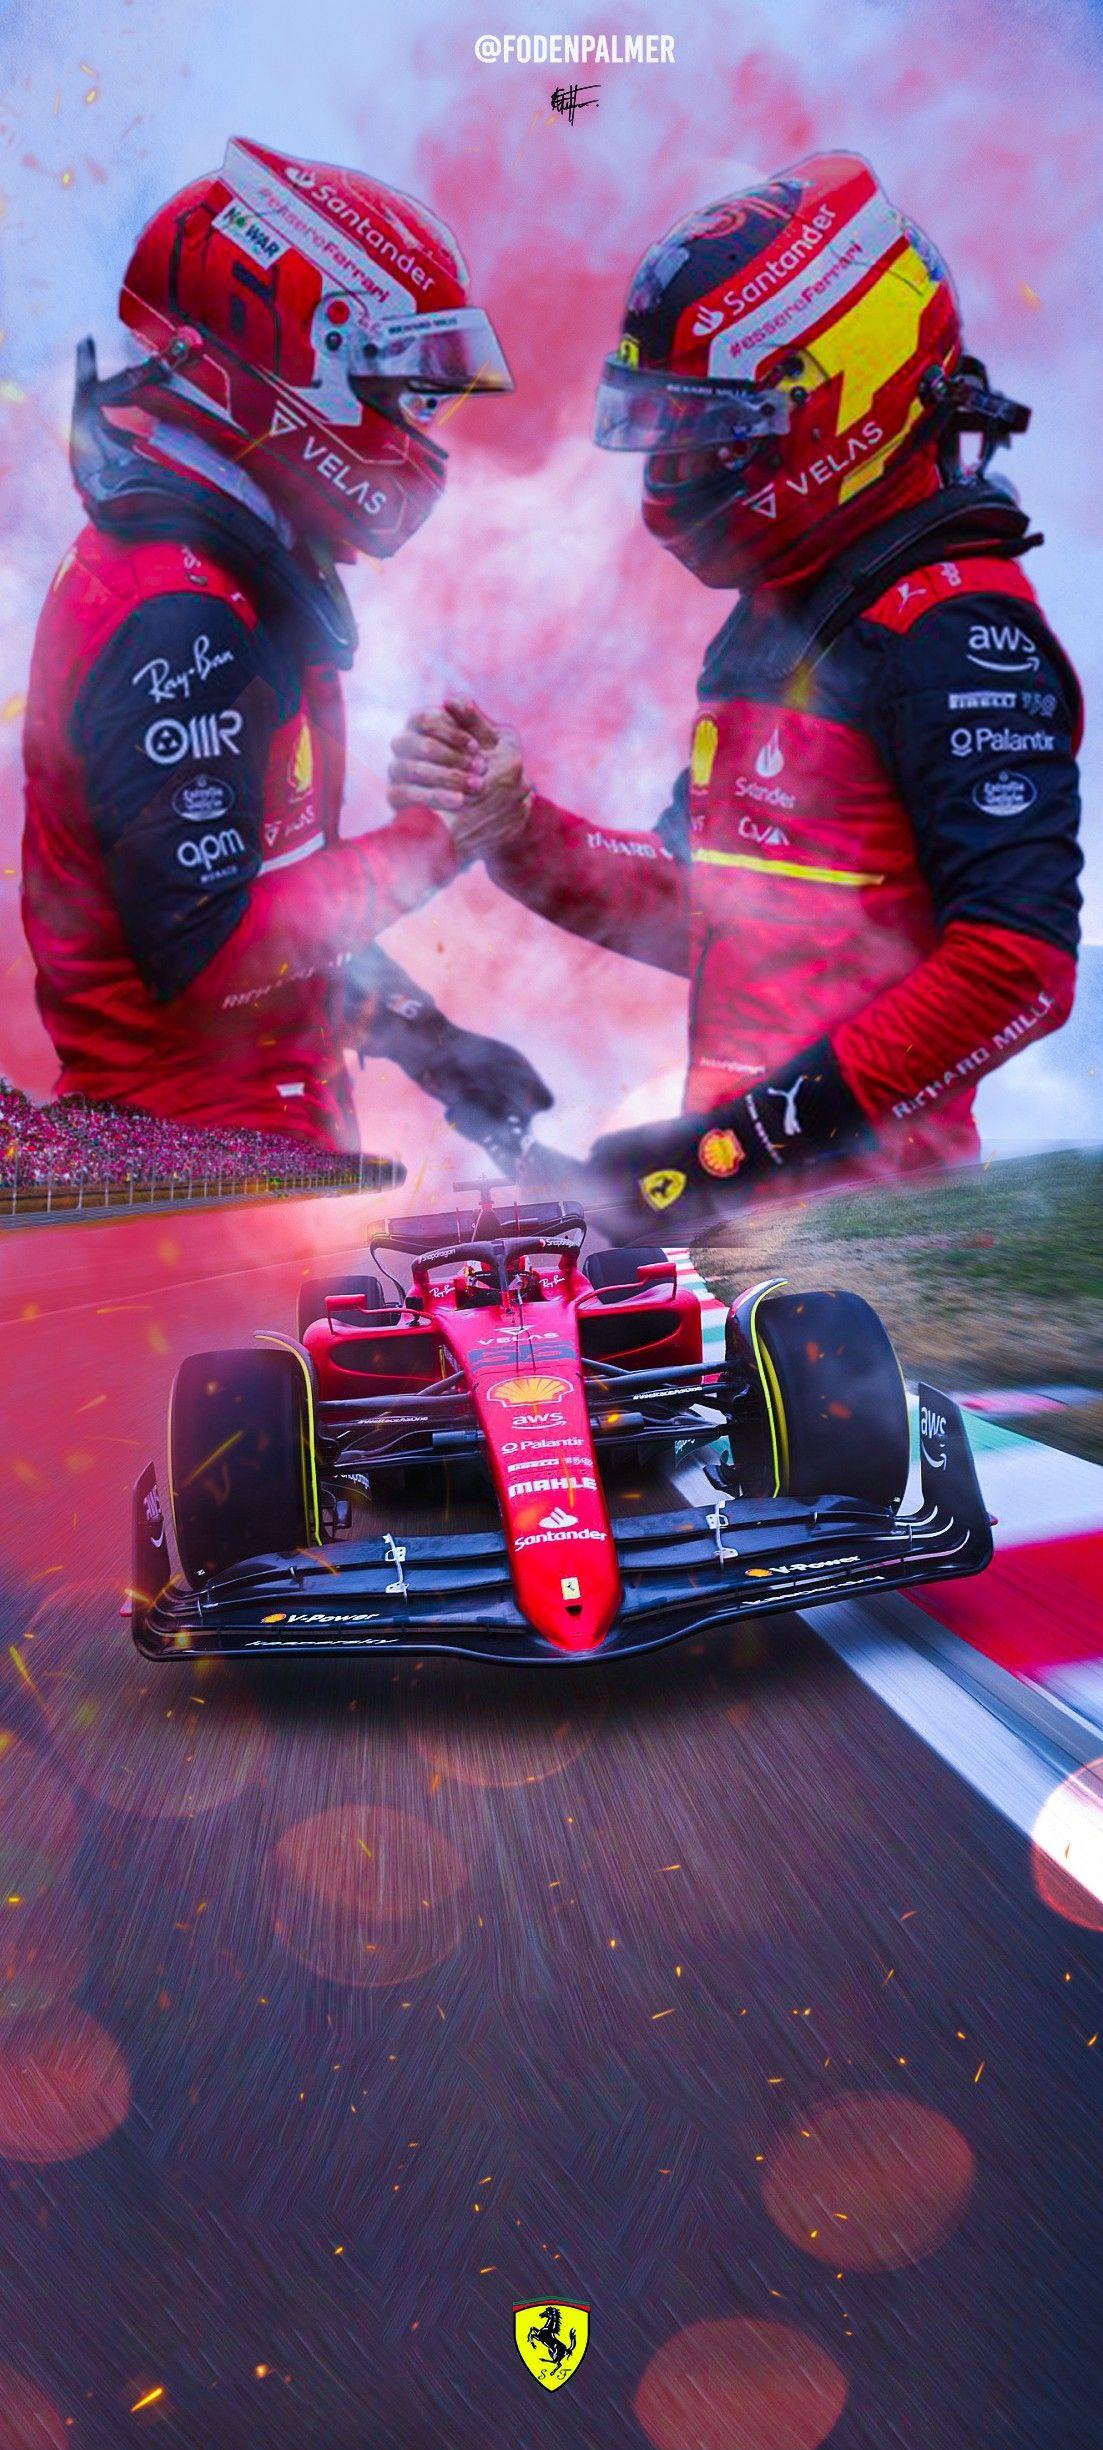 Ferrari F1 Wallpaper Sfondi Auto Da Corsa iPhone